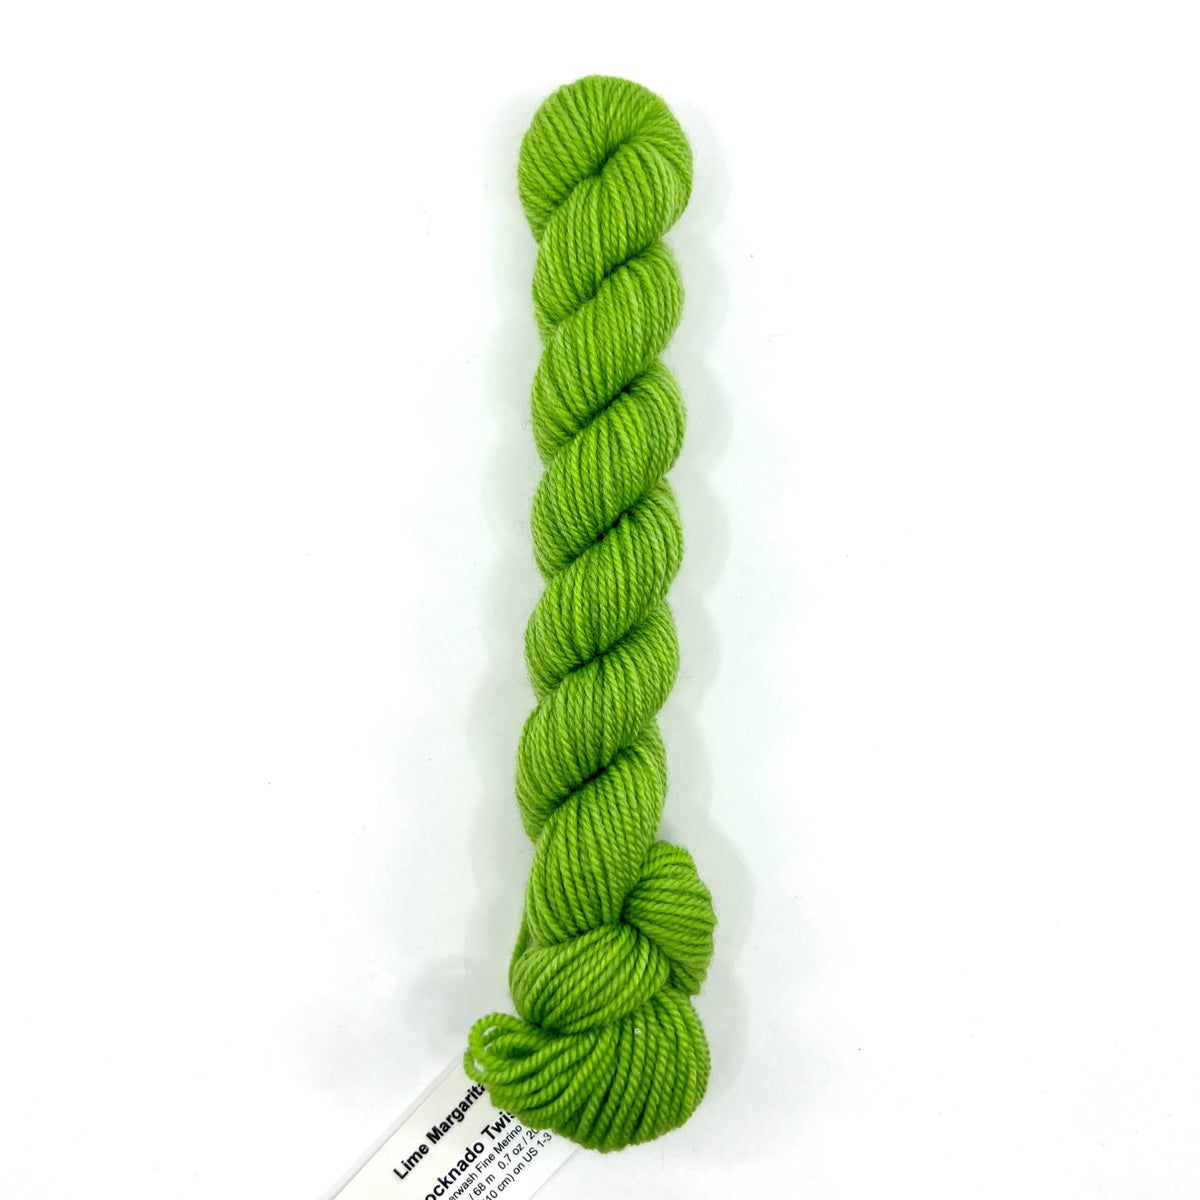 Lime Margarita - Socknado Mini Twister 20 Gram - Dyed Stock